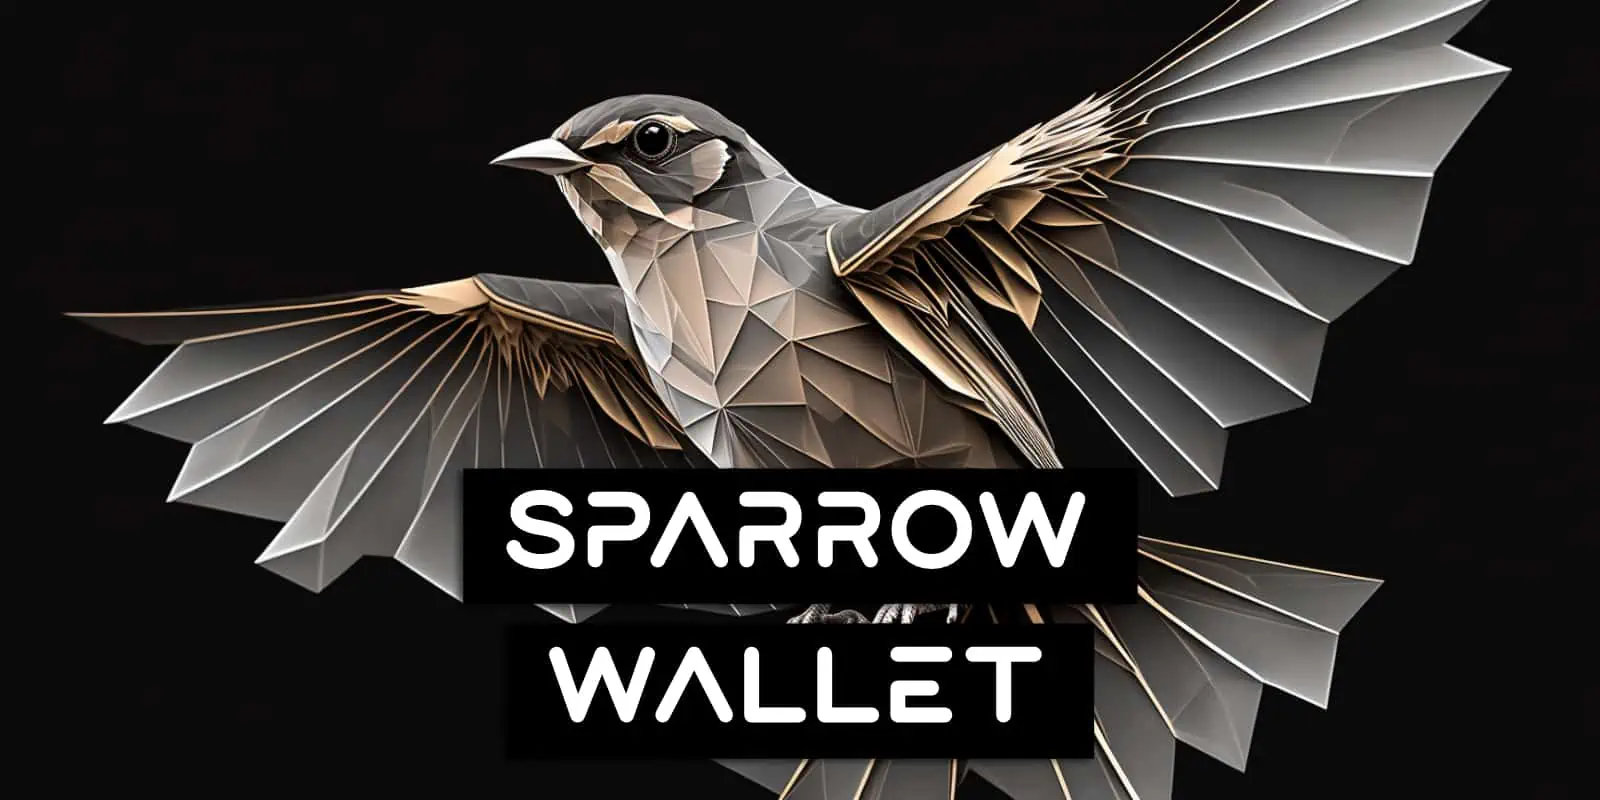 Sparrow Wallet